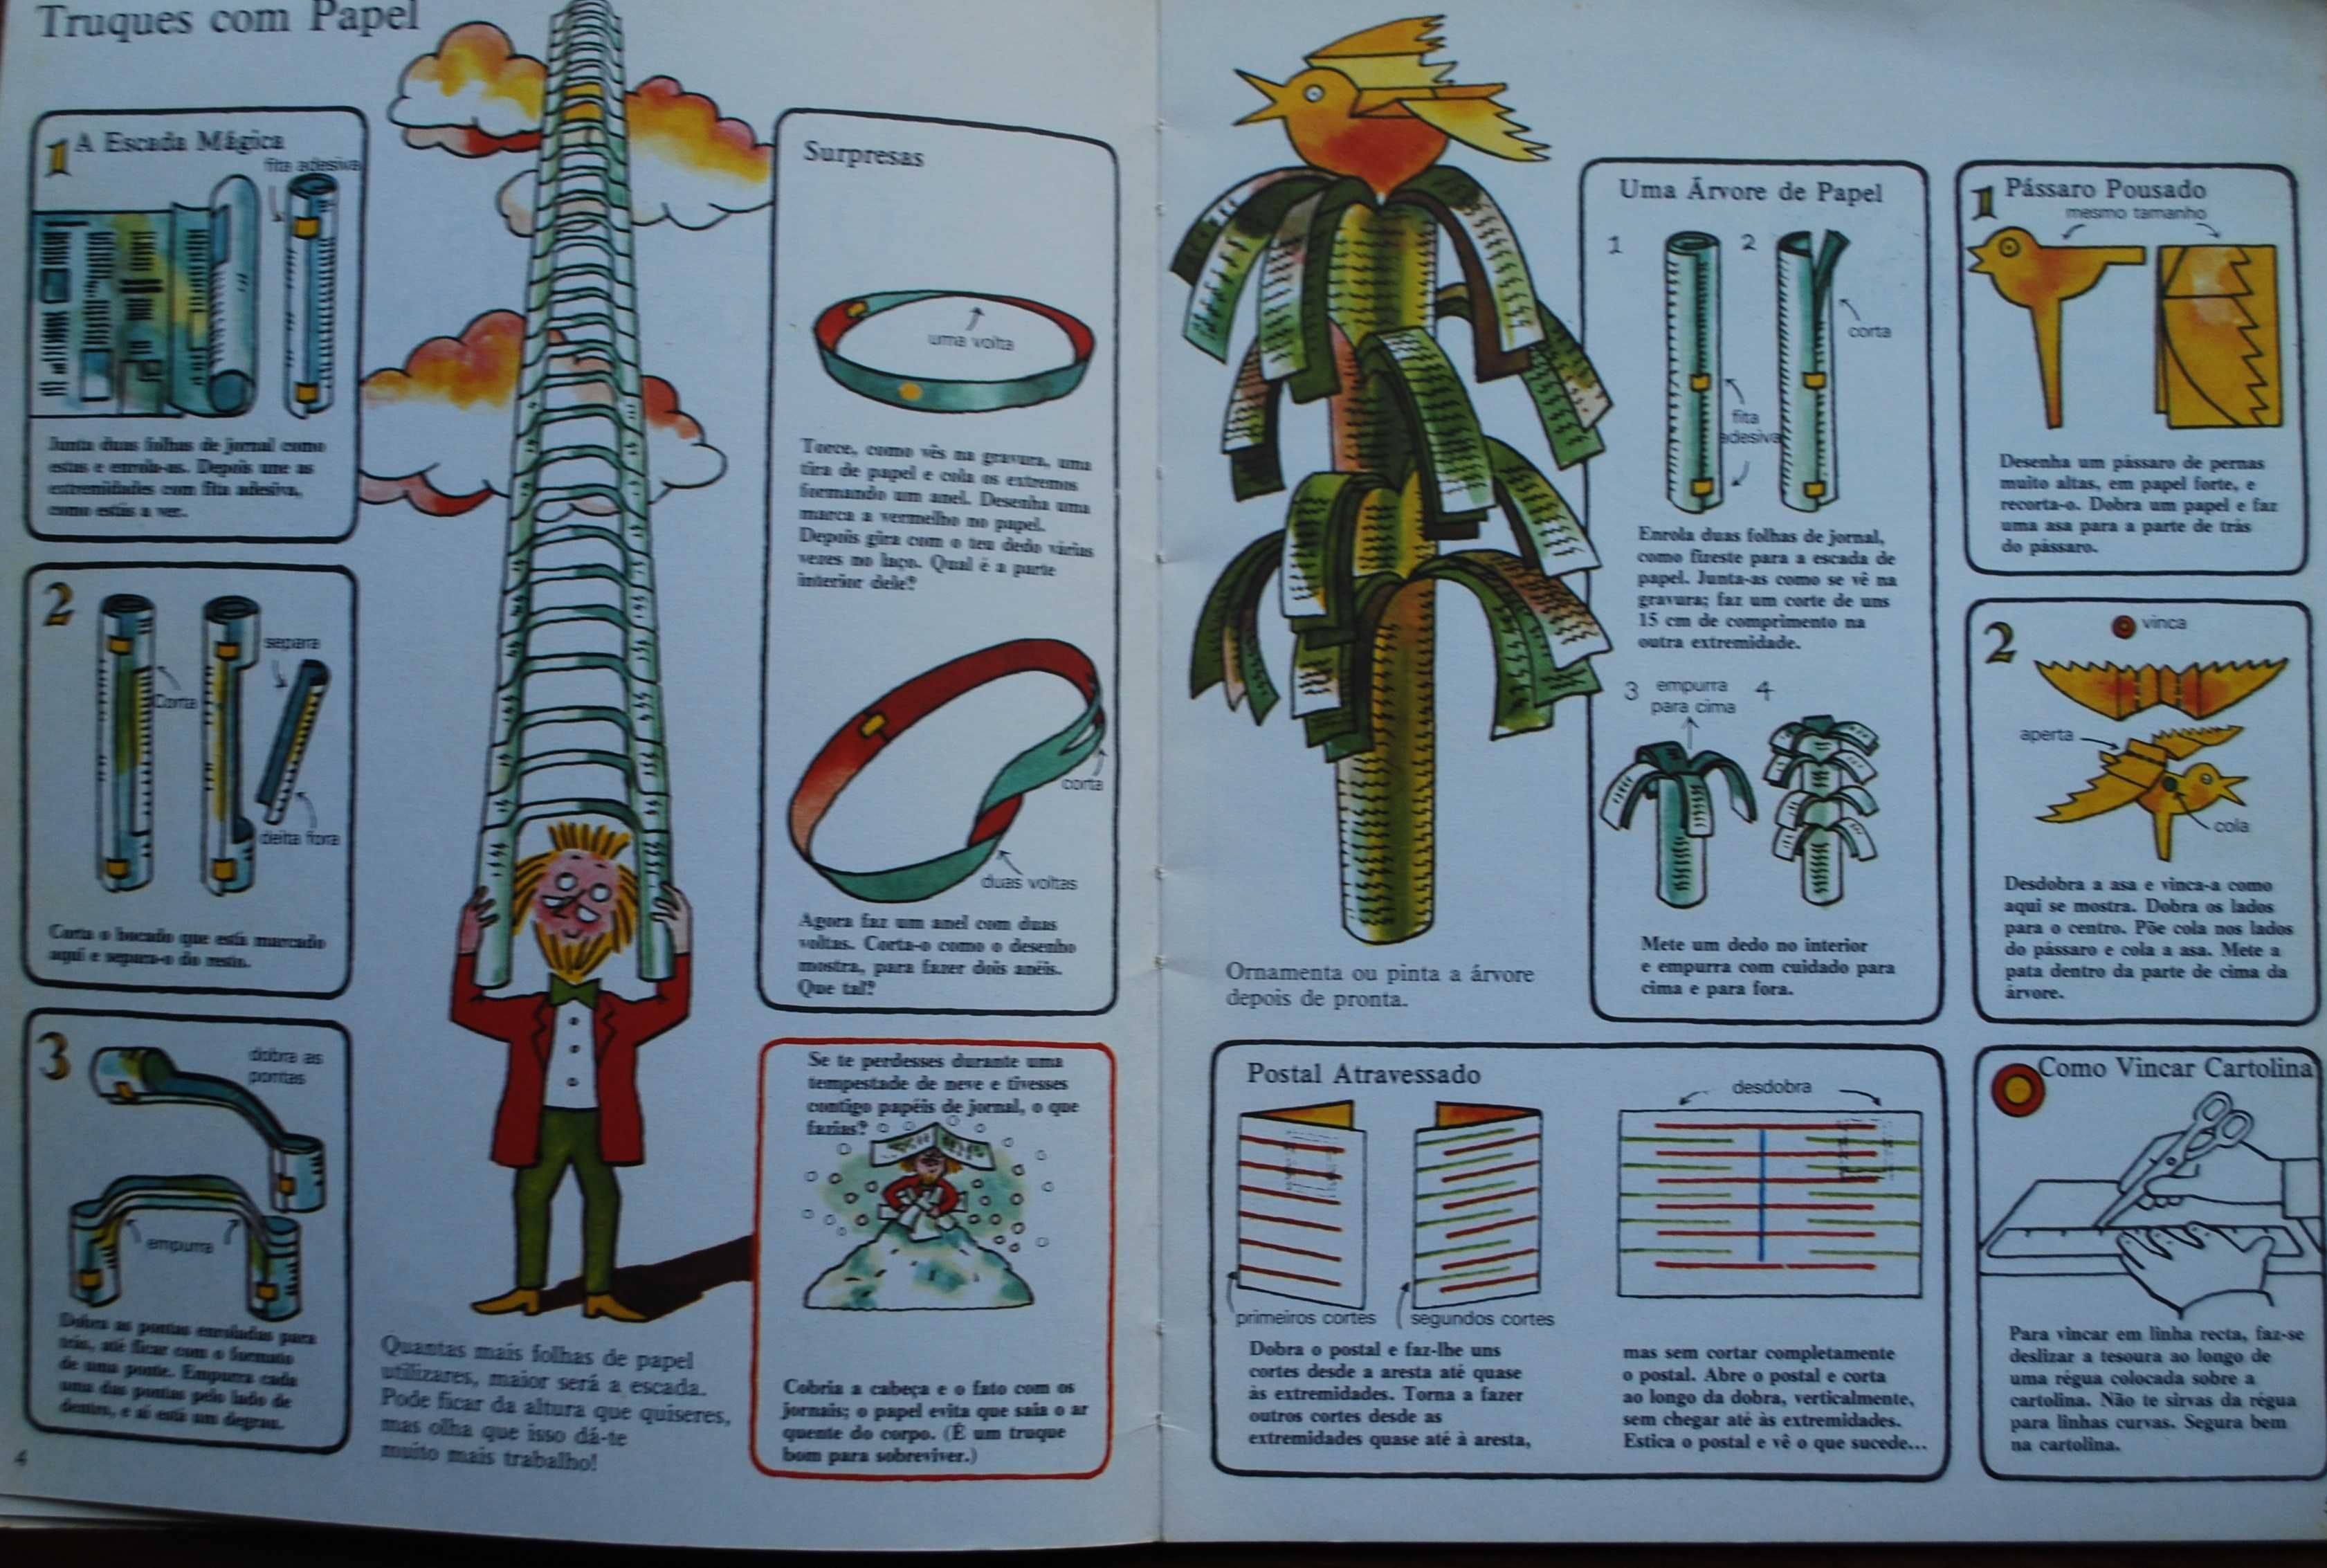 O Livro dos Jogos de Papel - Como Fazer - 1ª Edição 1977